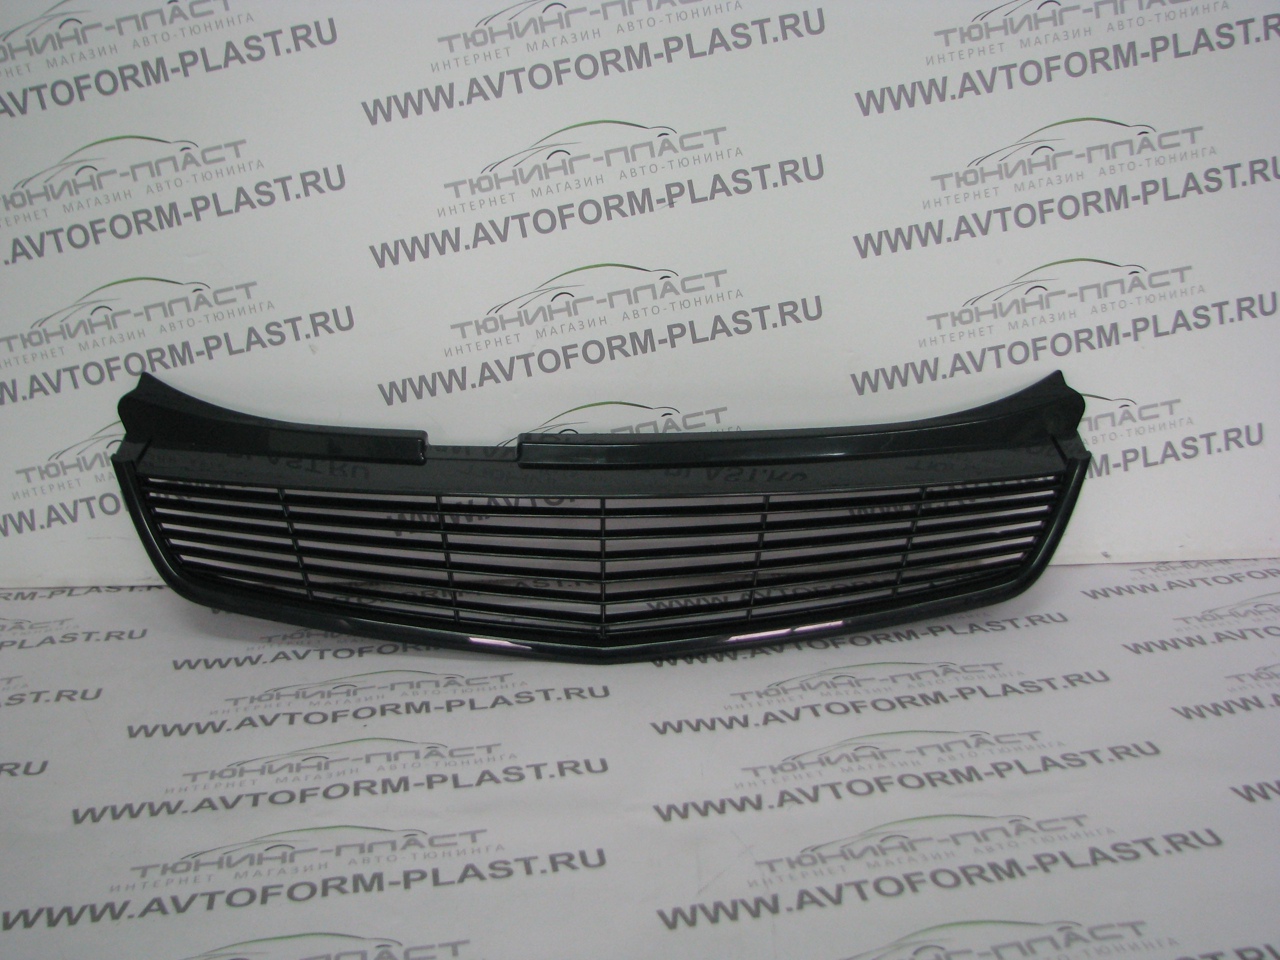 Решетка радиатора №4 Лада Приора ВАЗ 21704 SE (черная)